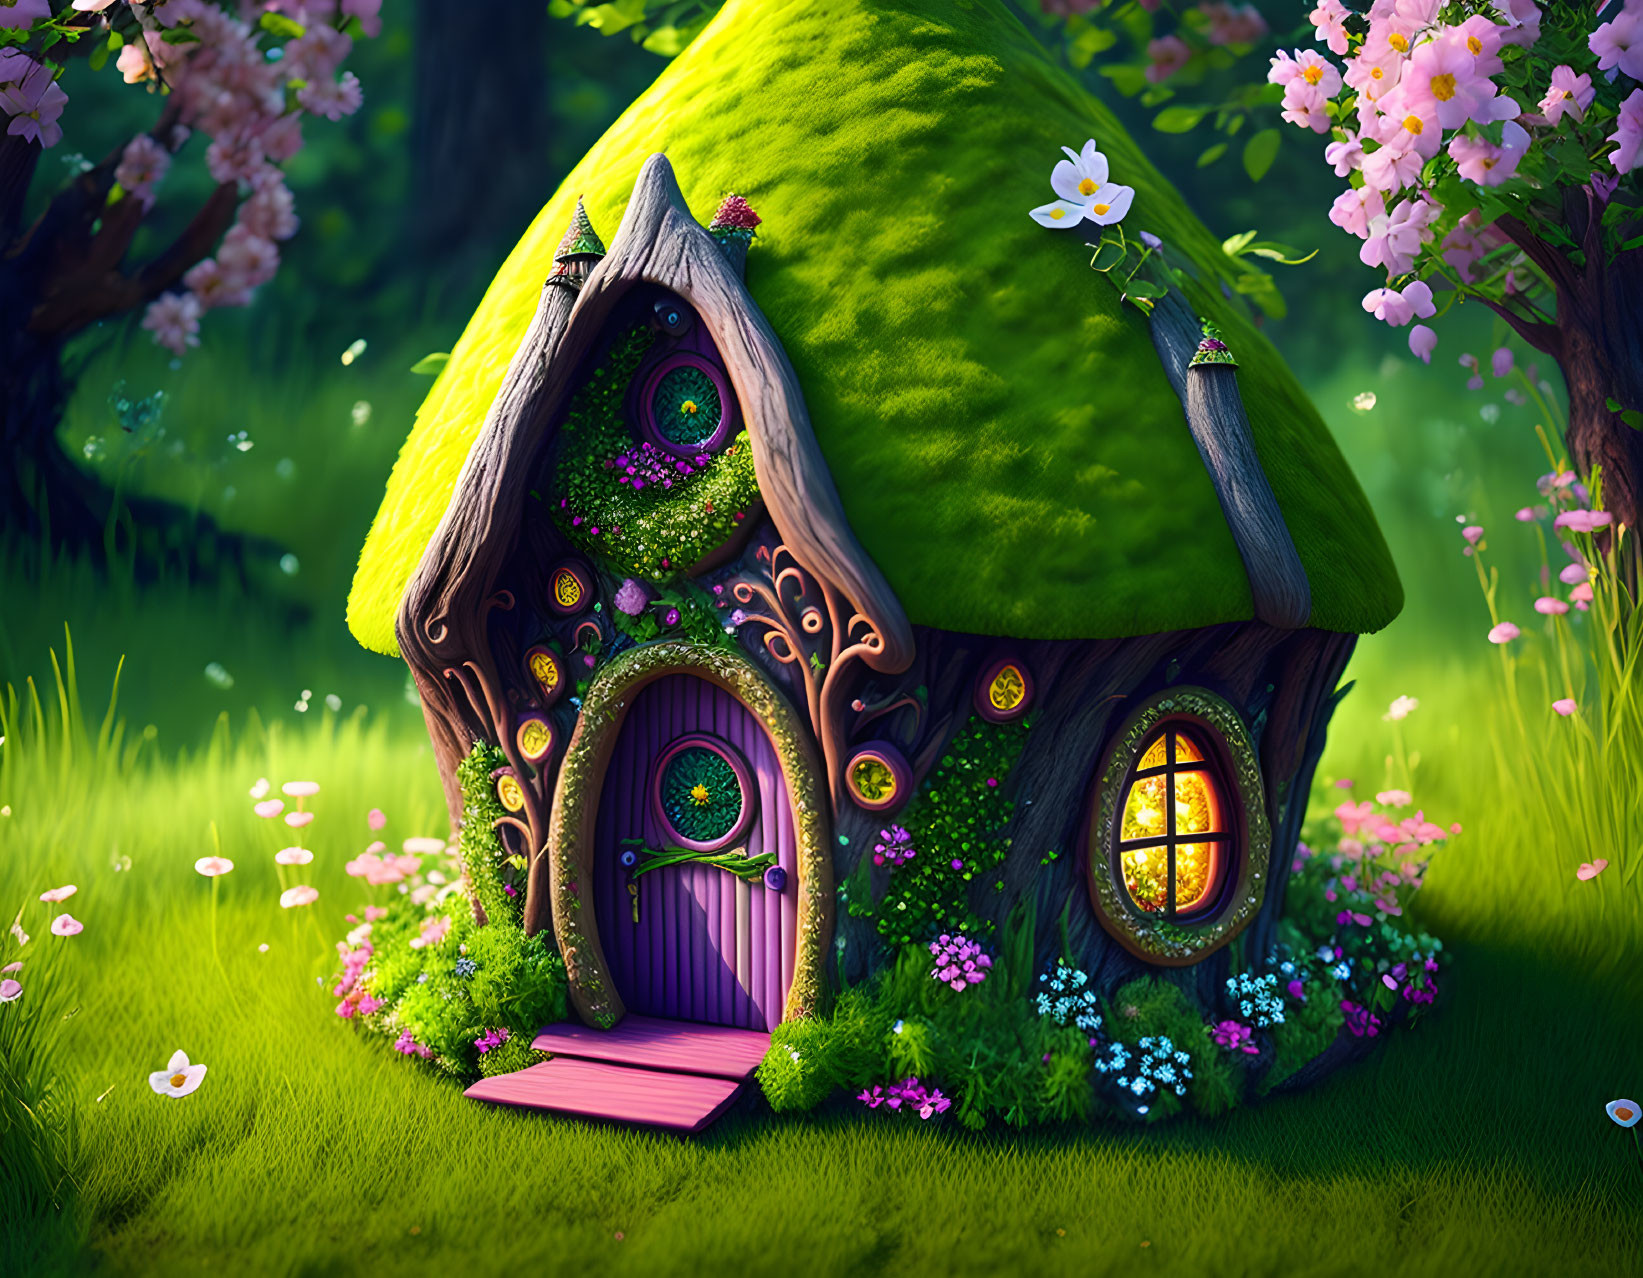 My fairy house